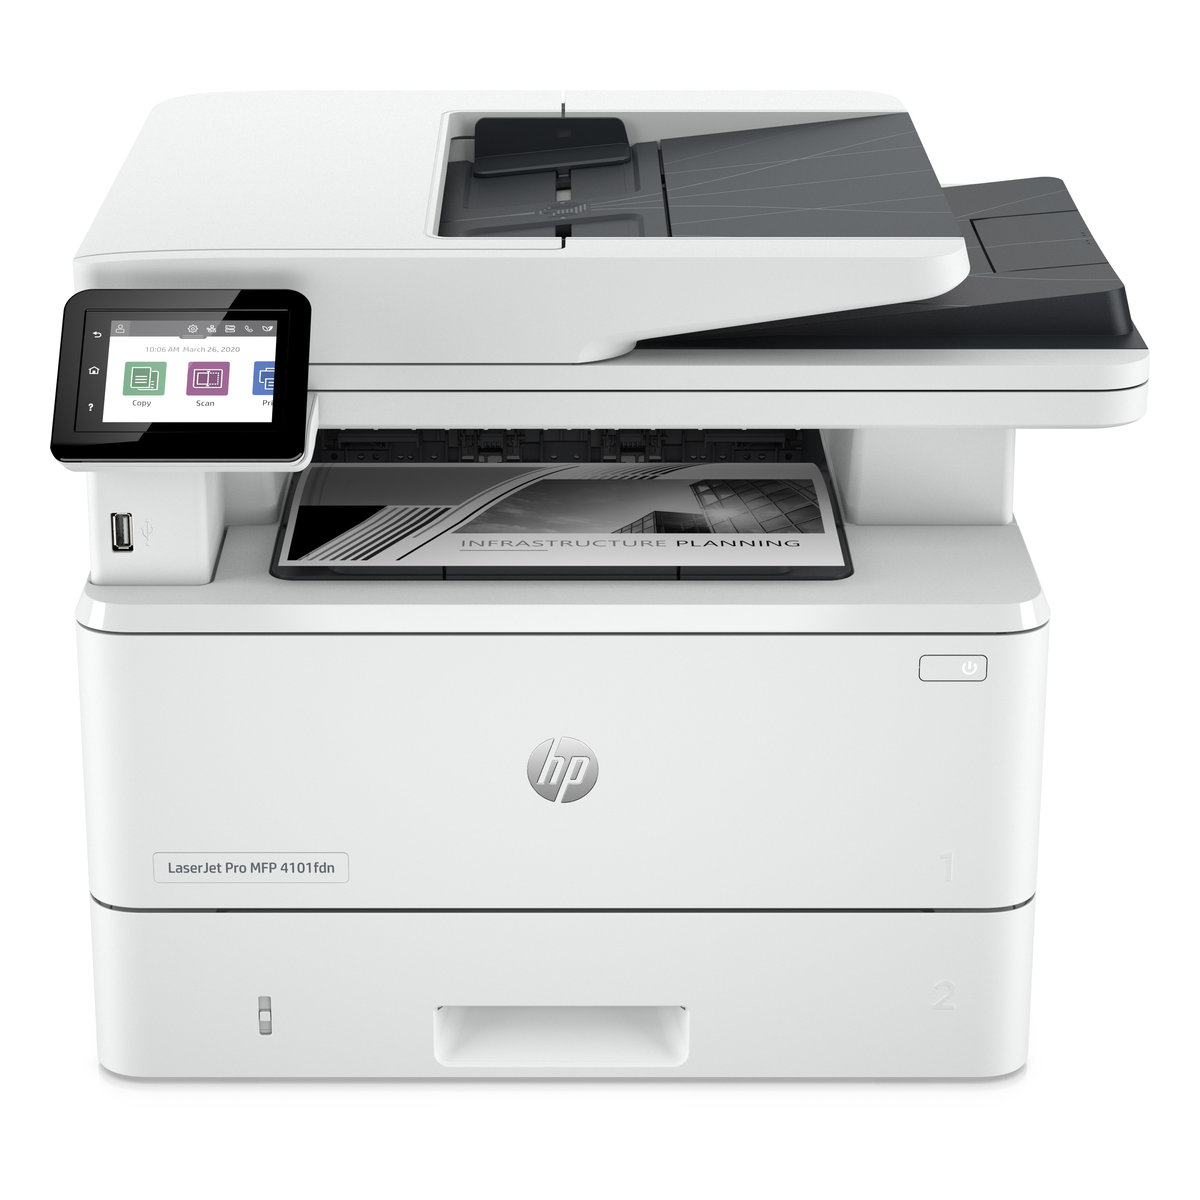 Náplně do tiskárny HP LaserJet Pro MFP 4102fdn